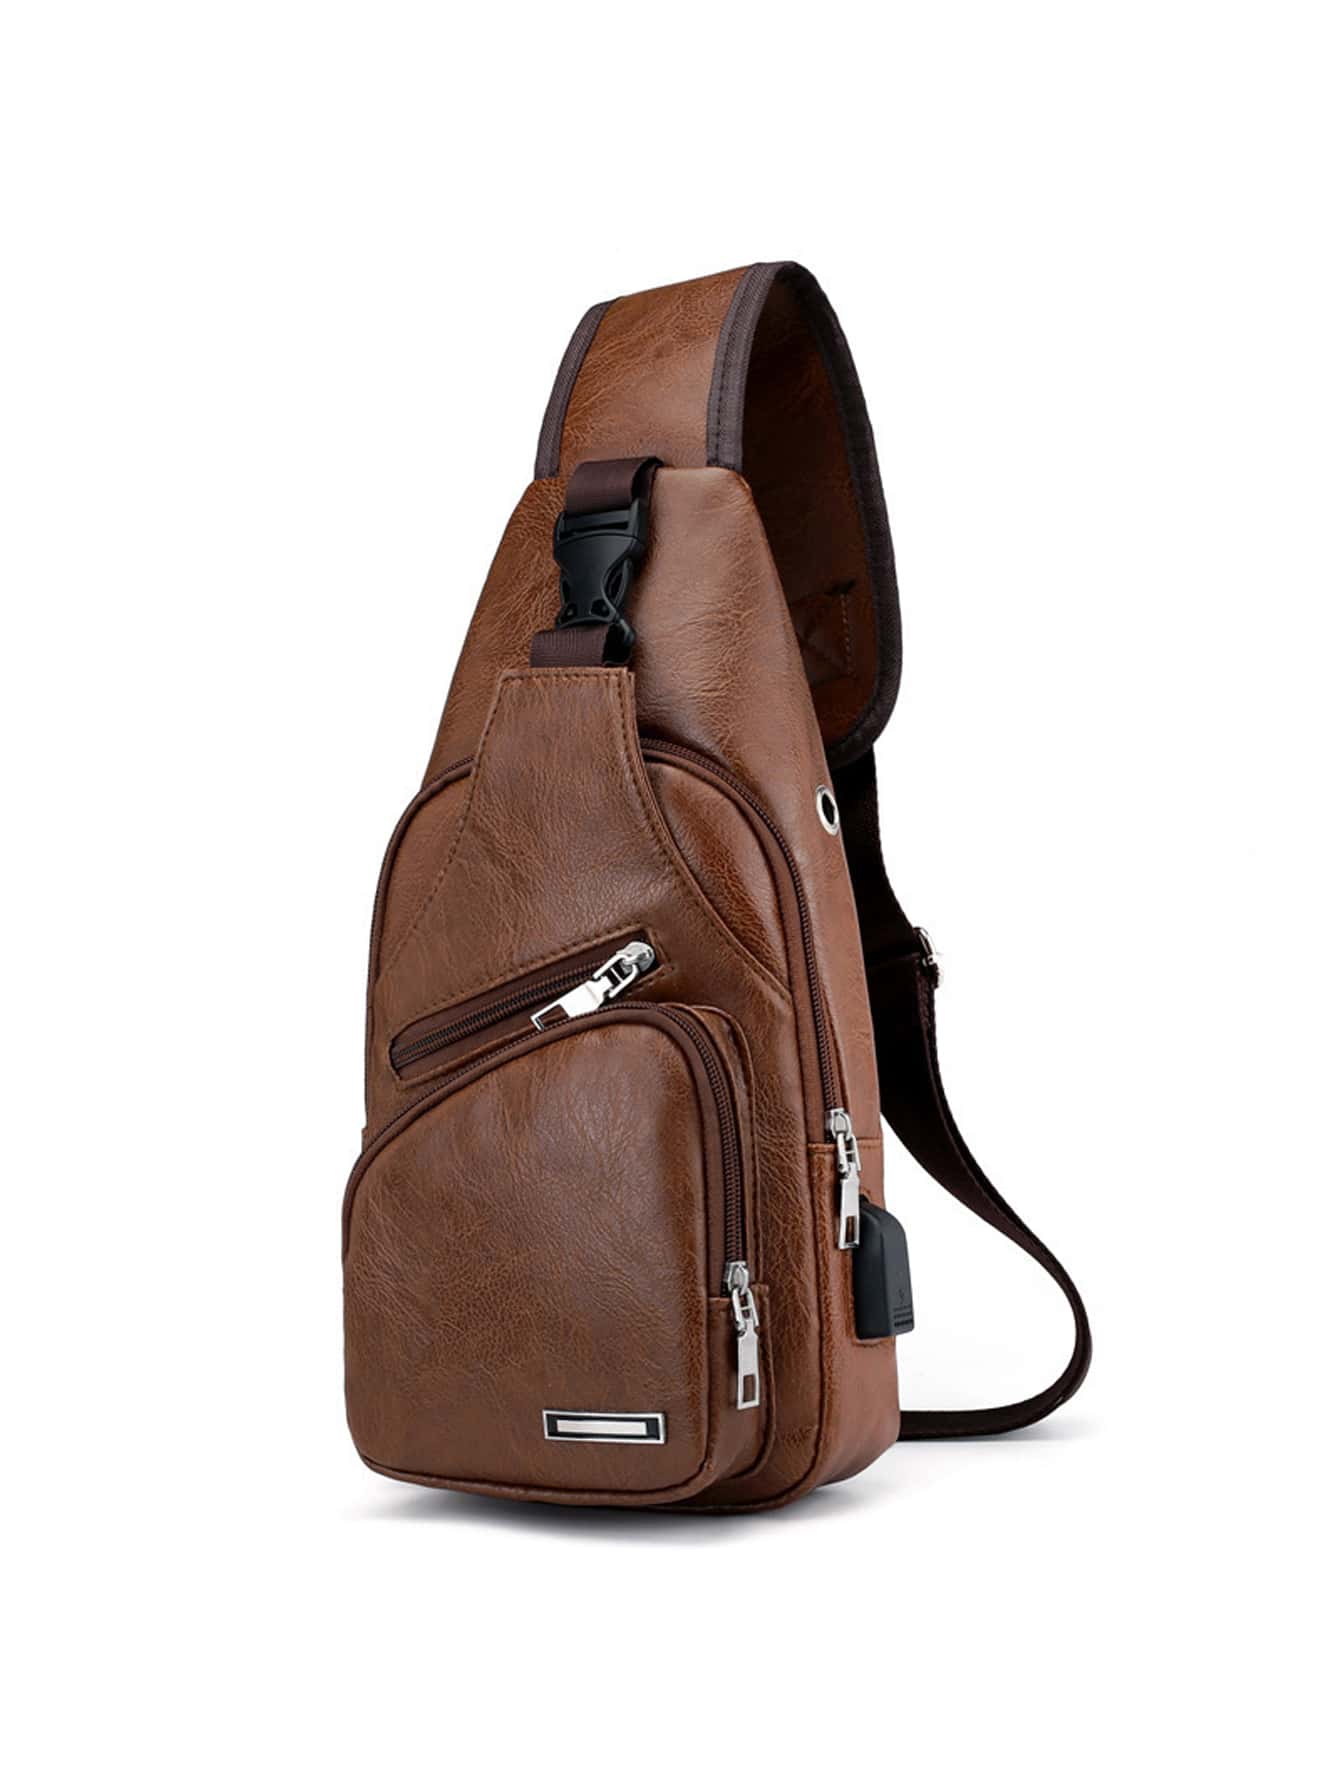 Мини-сумка на ремне с металлическим декором на молнии, коричневый kingsons горячая нагрудная сумка новая анти вор сумка через плечо водоотталкивающие сумки через плечо 10 дюймов ipad модные сумки